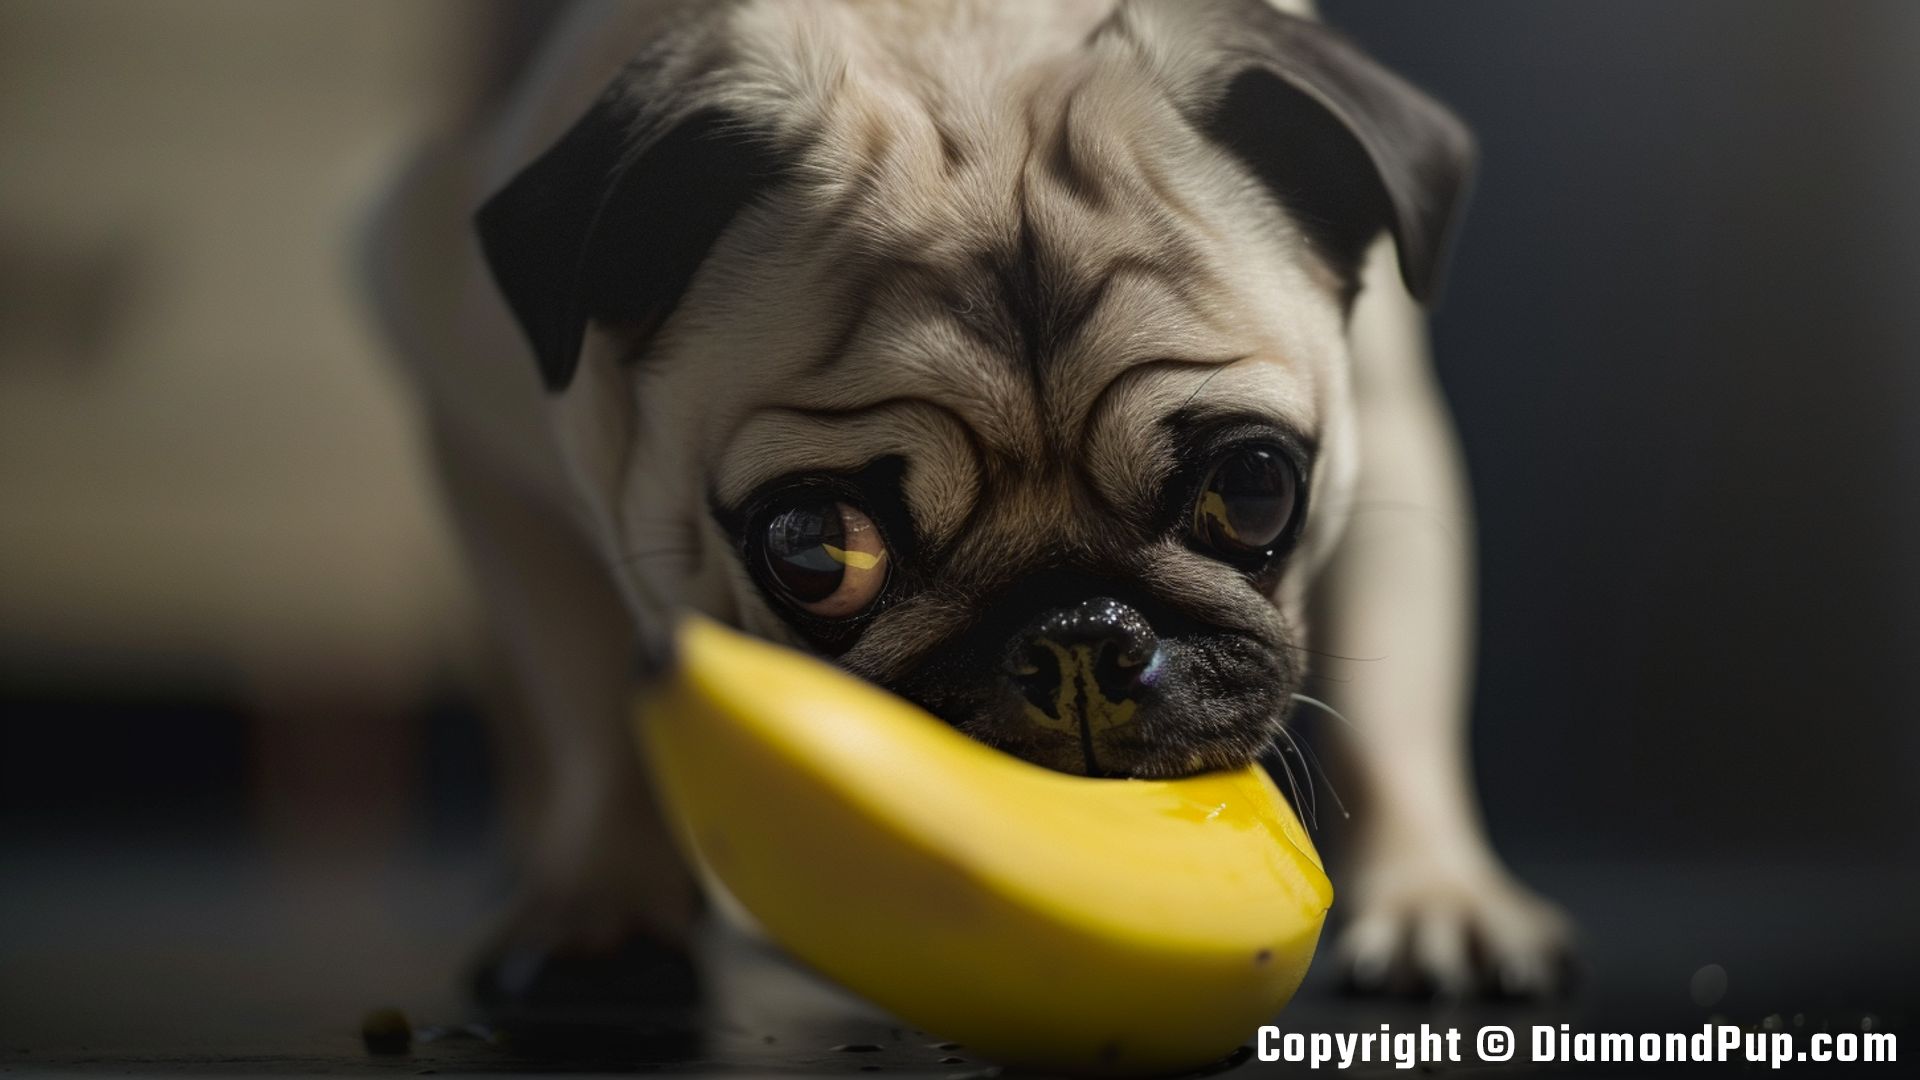 Photograph of Pug Snacking on Banana